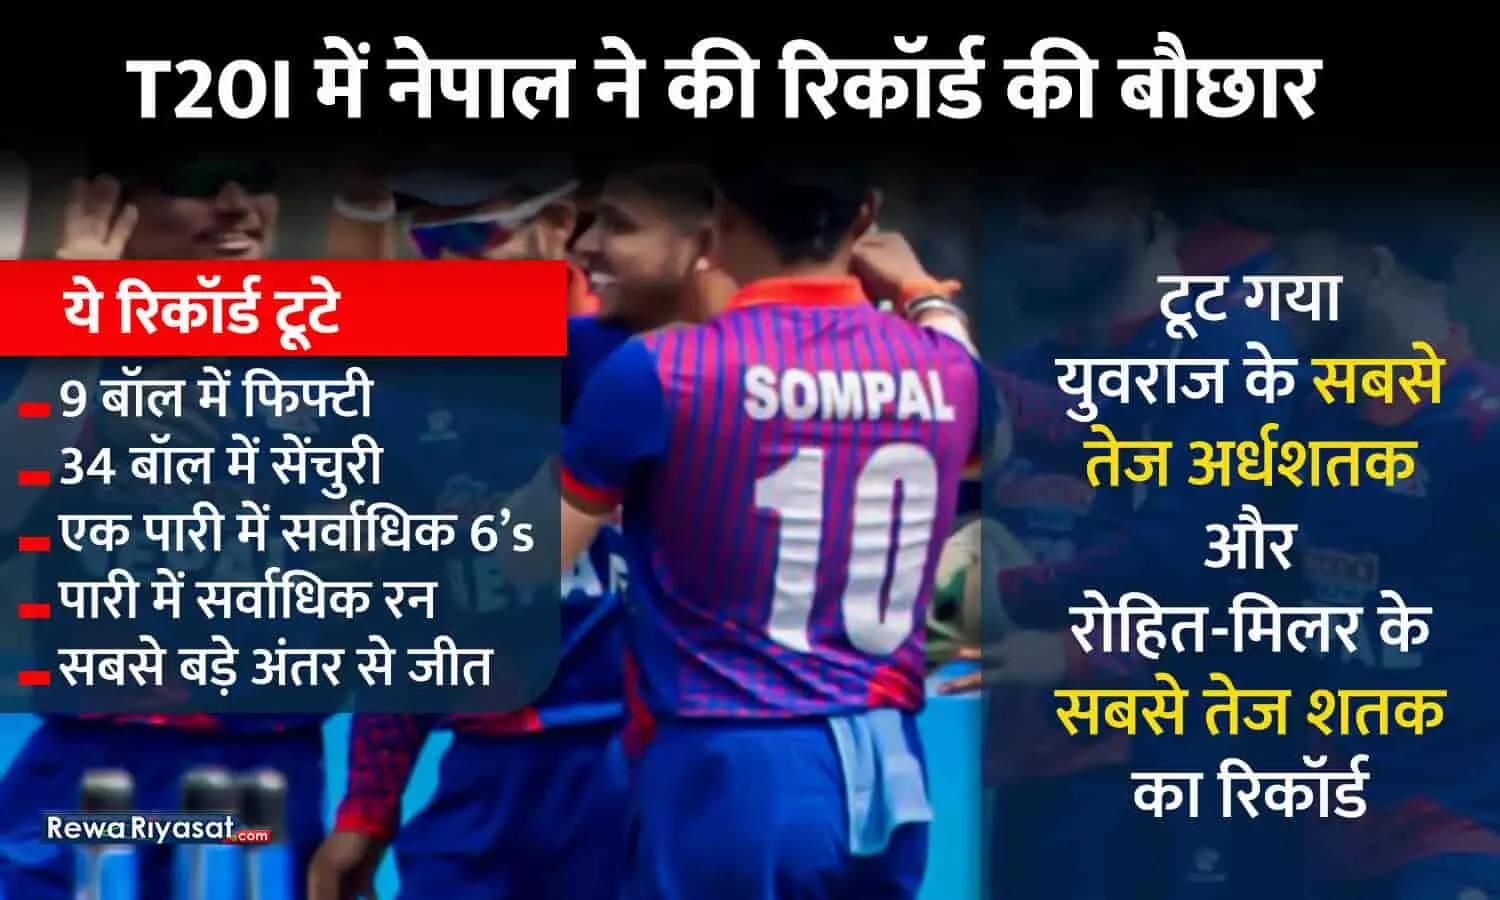 T20 में युवराज-रोहित का रिकॉर्ड टूटा: दीपेंद्र ने 9 बॉल पर बनाए 50, मल्ला ने 34 बॉल में सबसे तेज सेंचुरी लगाई; नेपाल की 273 रन की सबसे बड़ी जीत